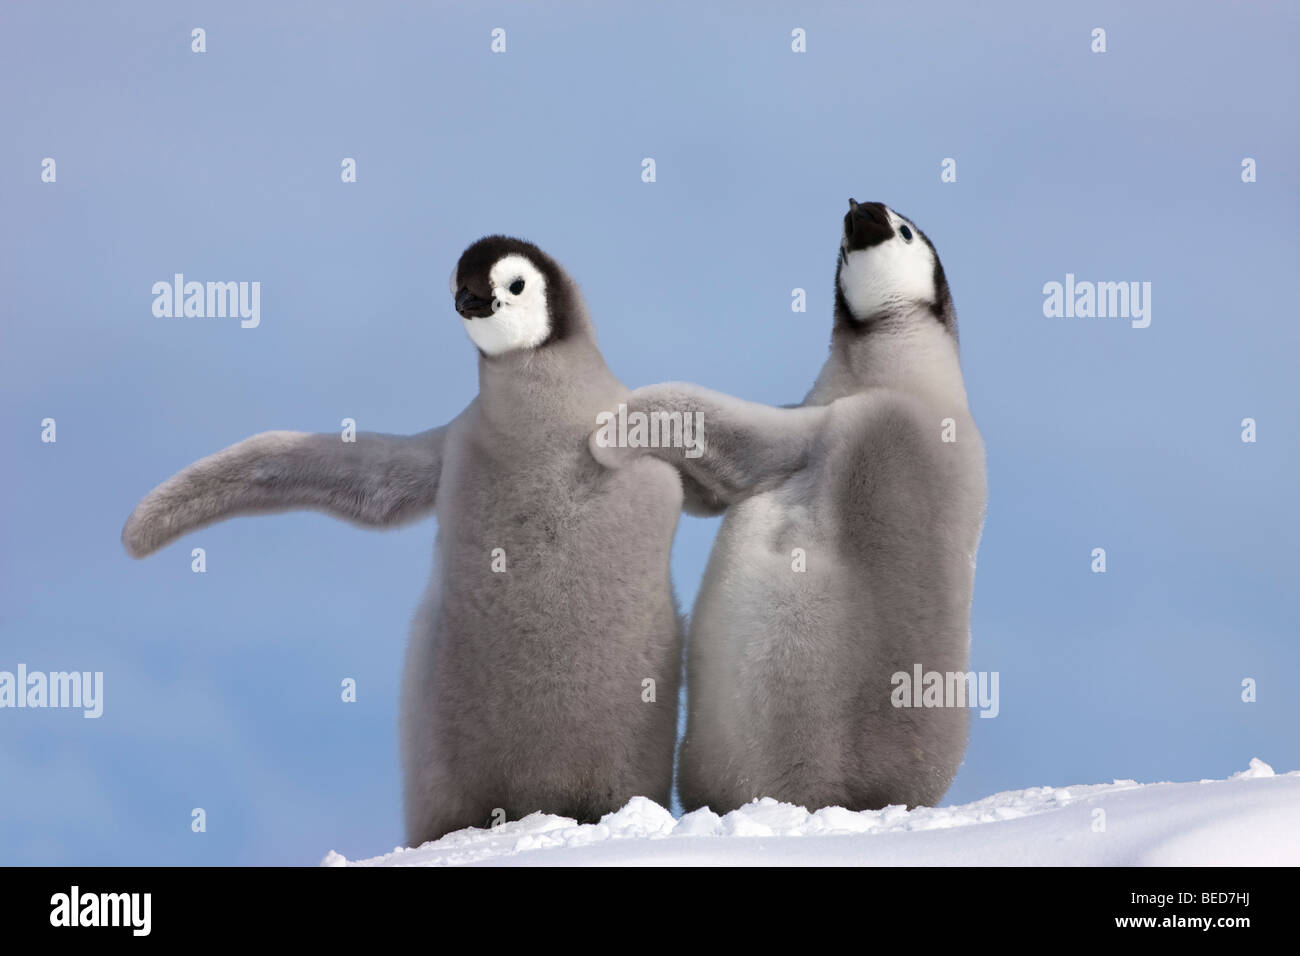 2 funny baby gris duveteux poussins de manchot empereur se tenir ensemble sur la colline de neige blanc ailes étalées touchant, forme, fond de ciel bleu dans l'Antarctique Banque D'Images